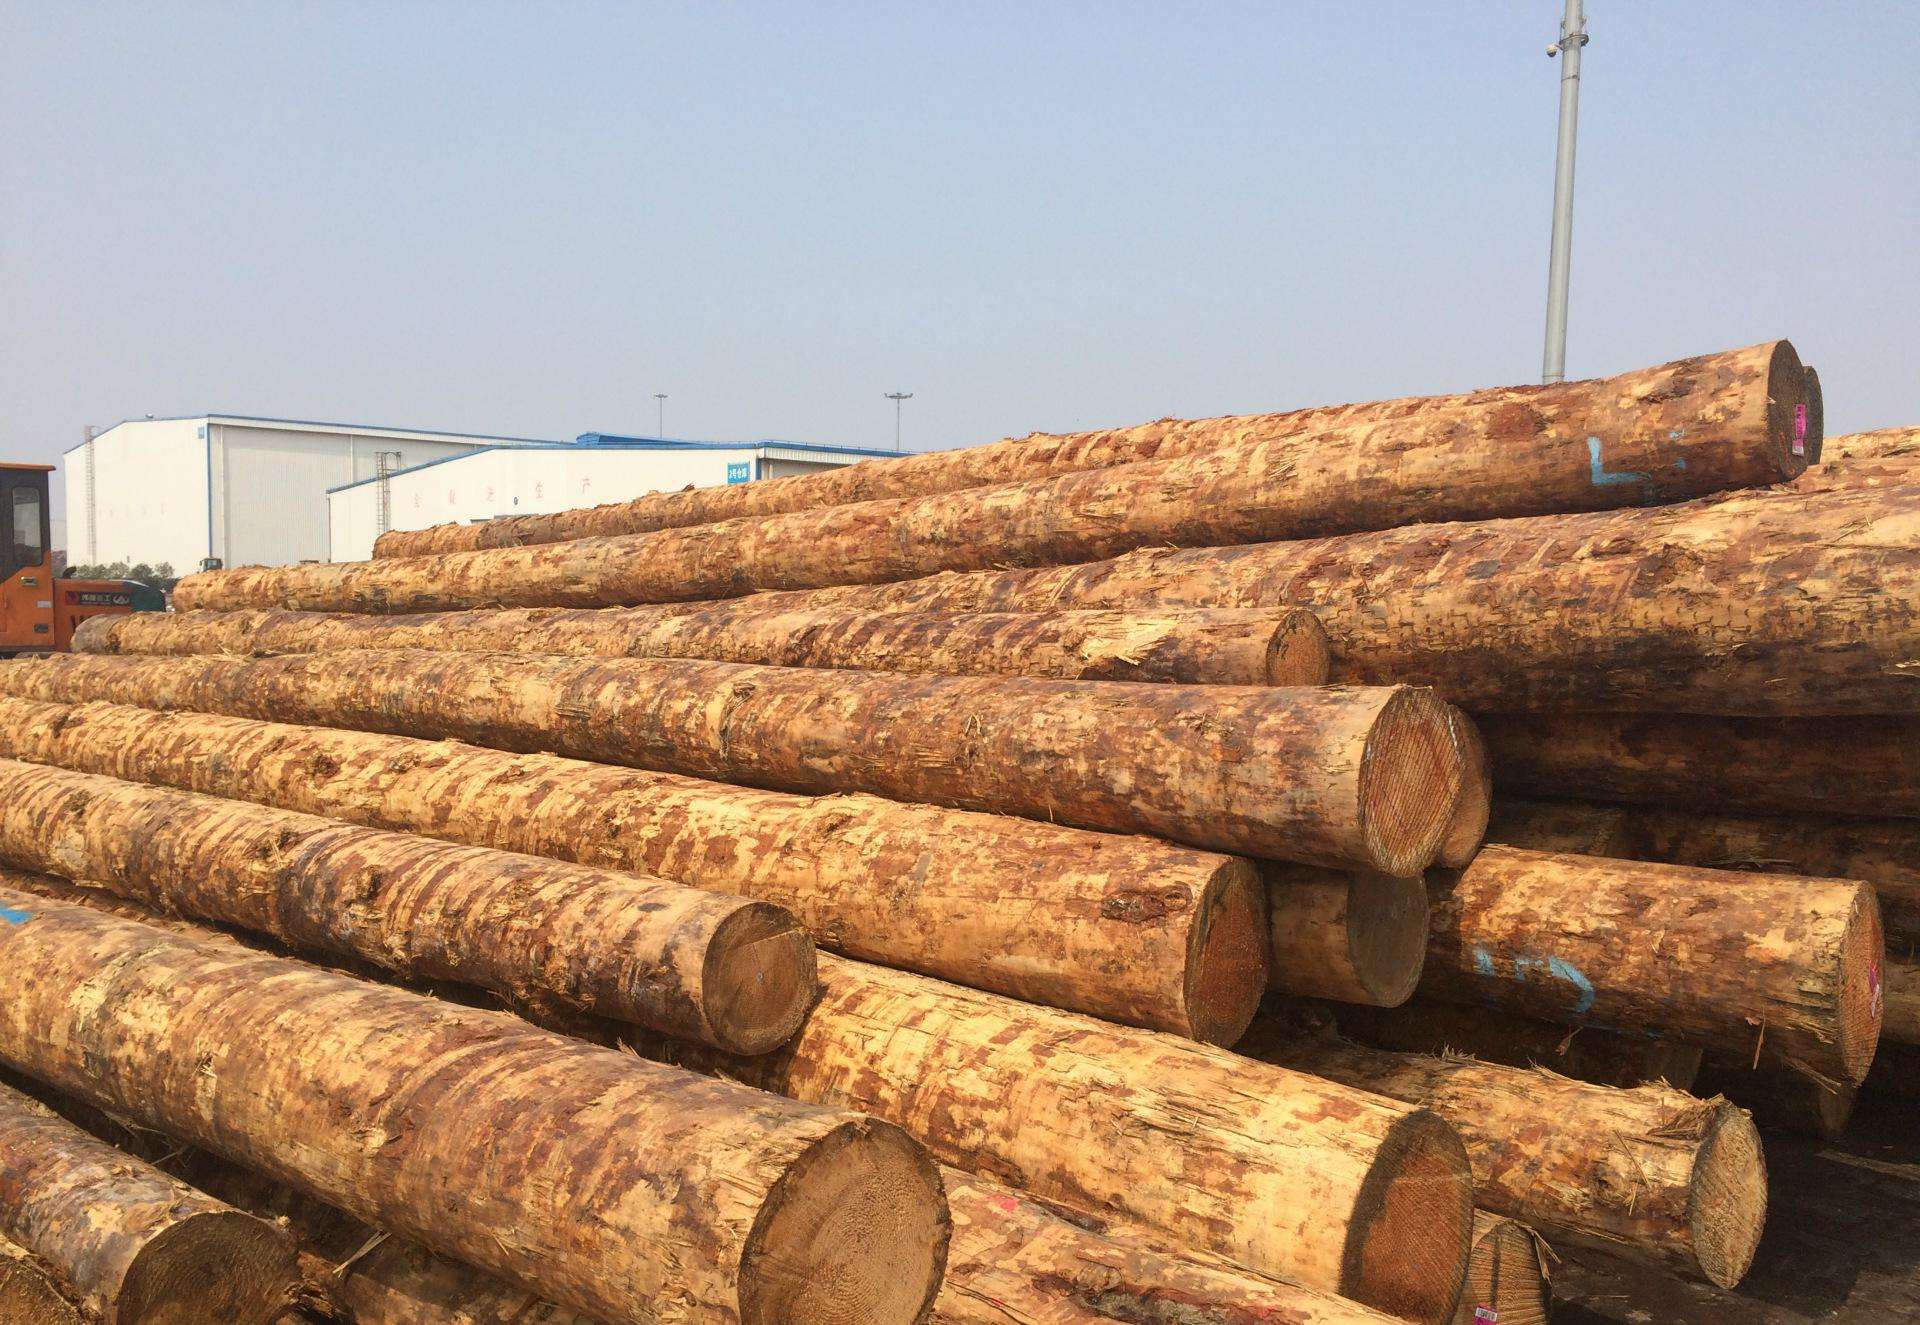 美国原木木材进口清关操作流程和进口报关费用